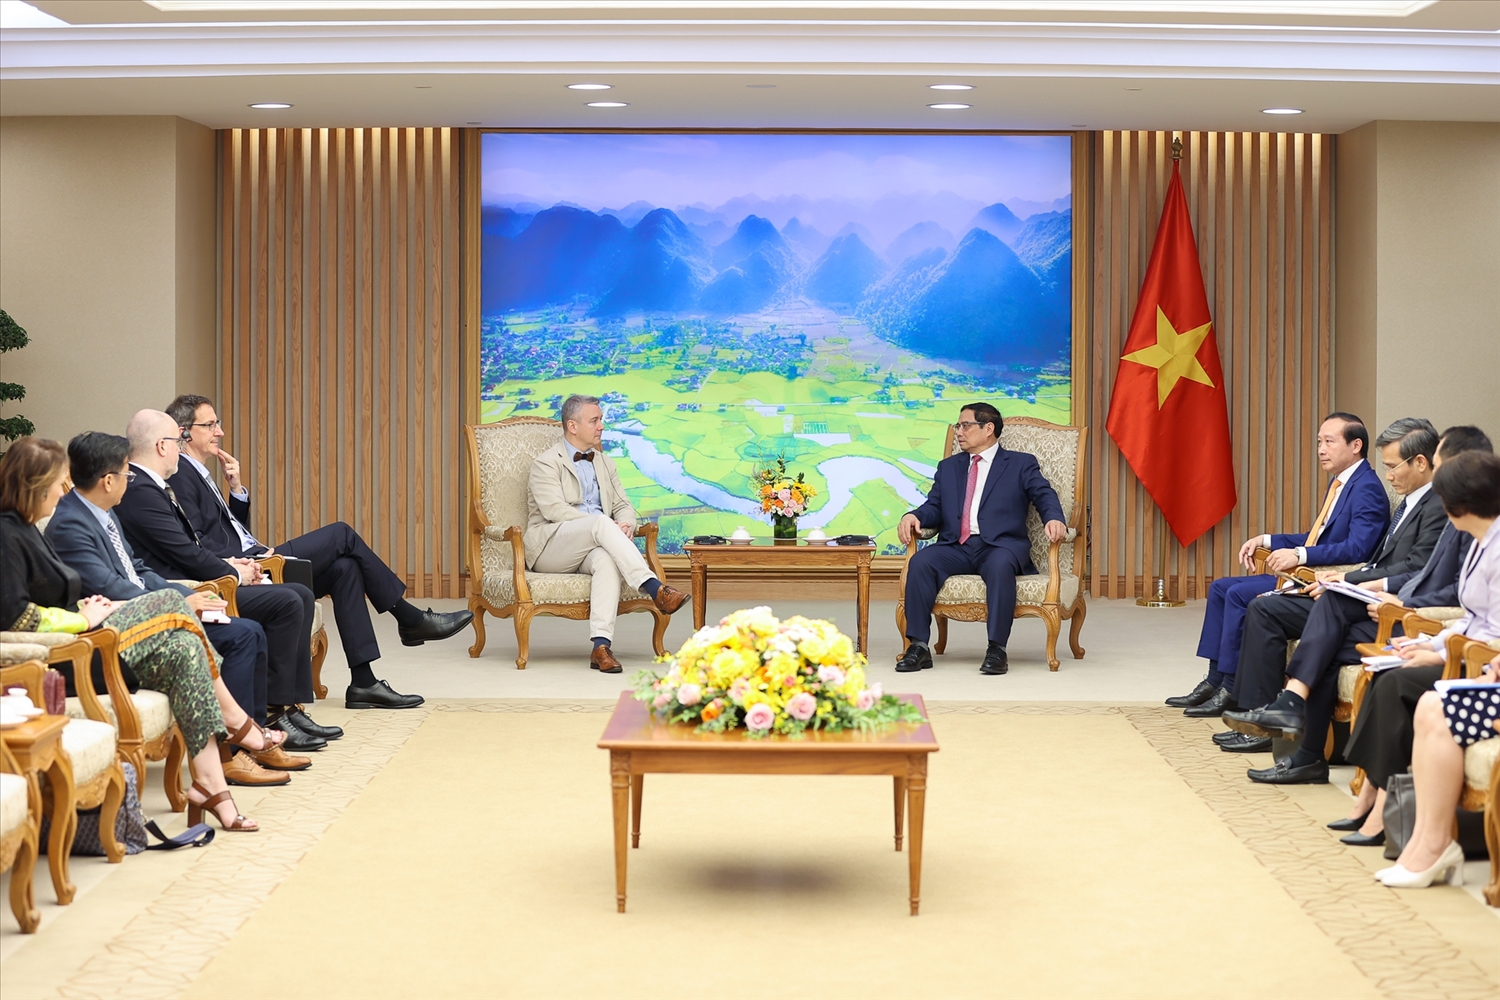 Thủ tướng mong muốn Đại sứ Karl Van Den Bossche tiếp tục thúc đẩy, kêu gọi các doanh nghiệp của Bỉ đầu tư vào Việt Nam, Tập đoàn John Cockerill với mạng lưới chi nhánh, quan hệ rộng lớn trên thế giới phát huy cầu nối đưa các nhà đầu tư quốc tế đến Việt Nam - Ảnh: VGP/Nhật Bắc